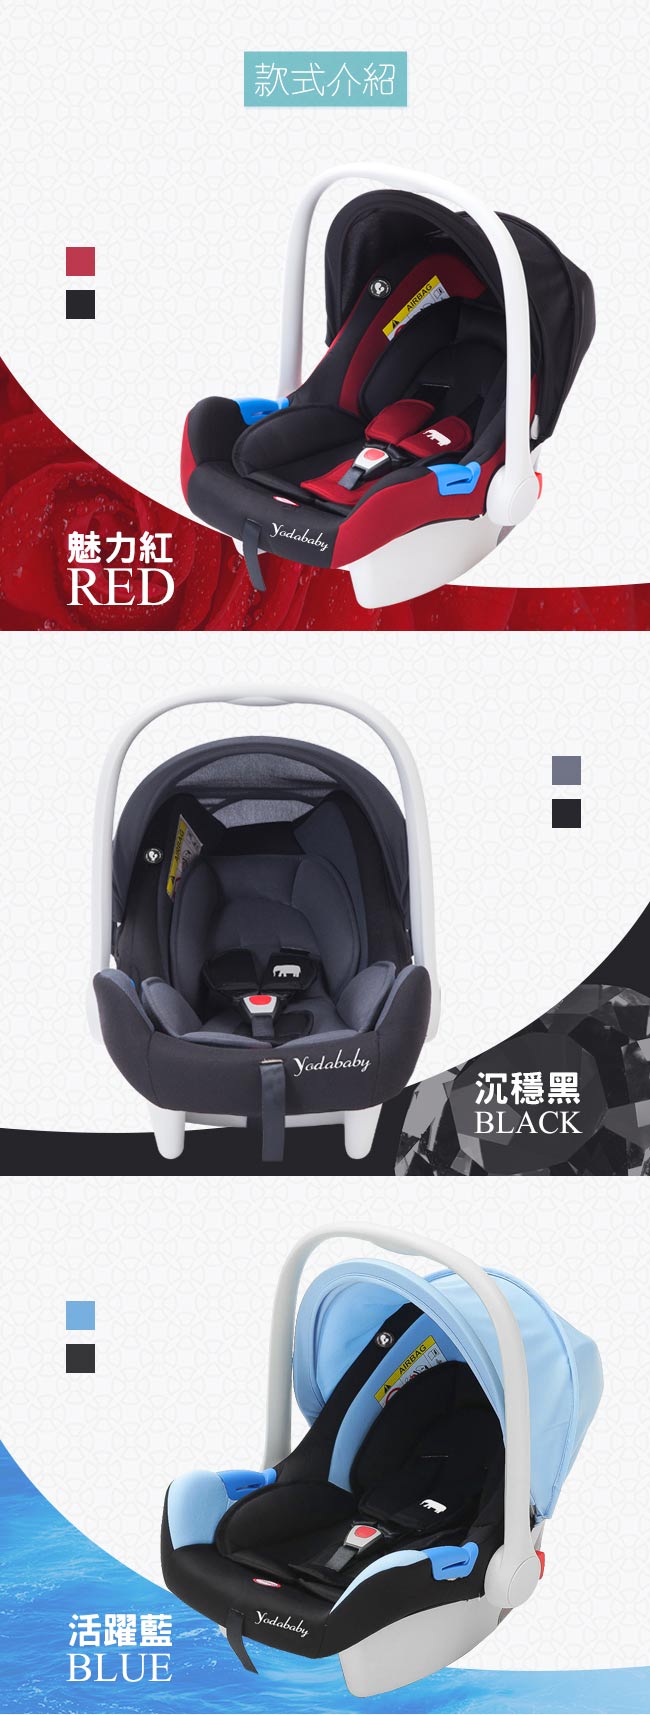 YoDa 嬰兒提籃式安全座椅-魅力紅